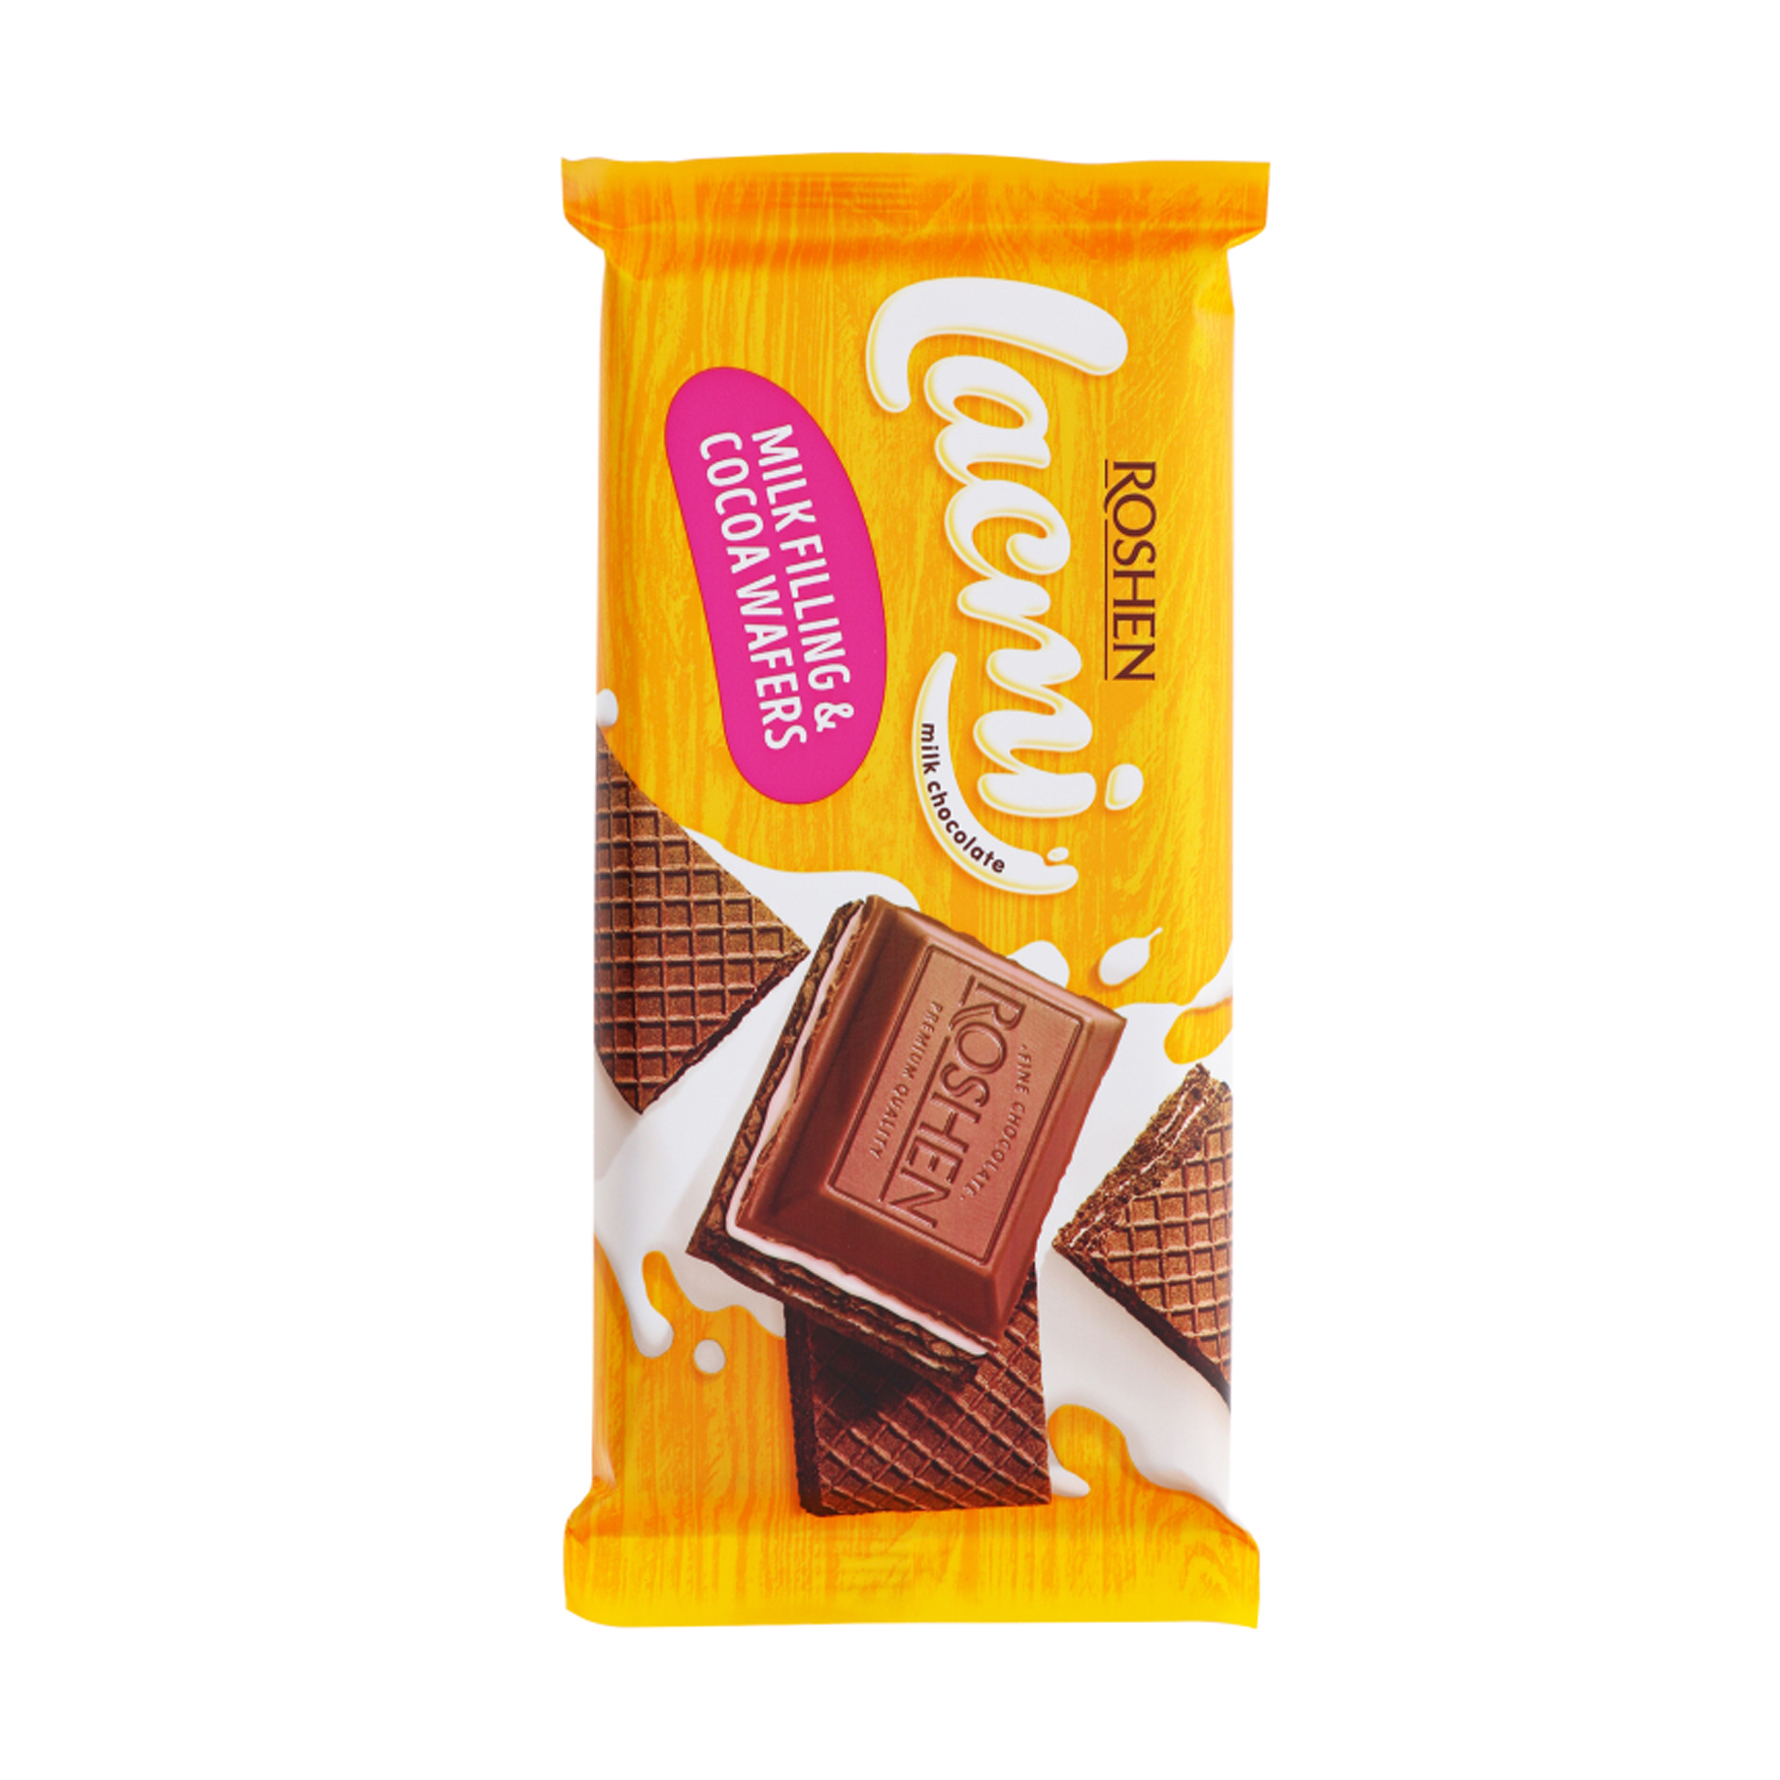 شکلات شیری با لایه های ویفر کاکائویی روشن - 90 گرم